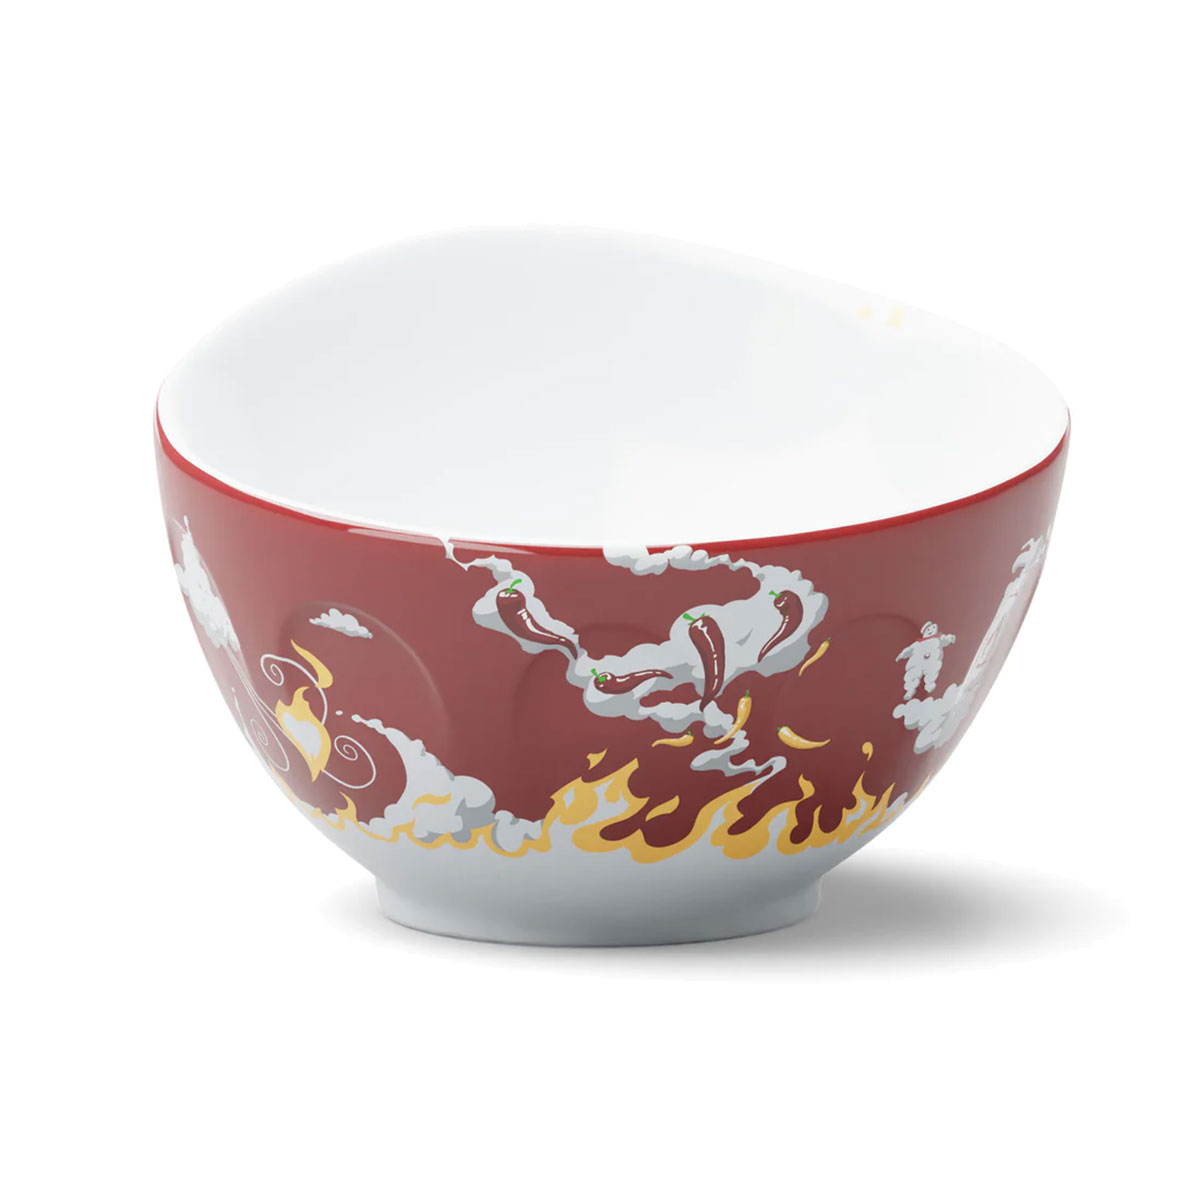 Large white porcelain bowl Tassen 500 ml - Hot kisses